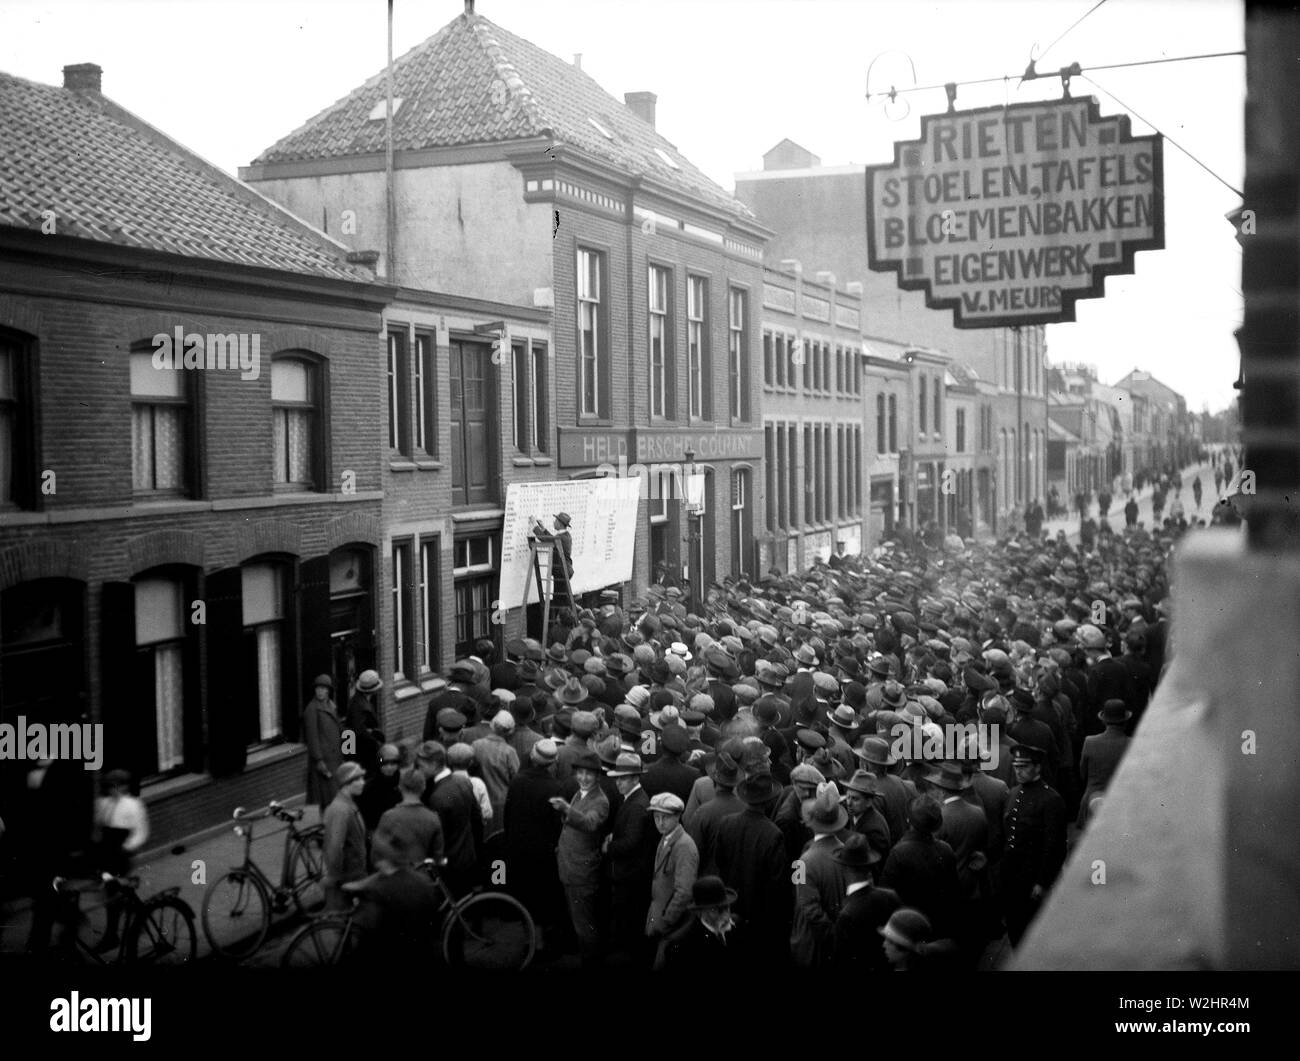 Los resultados de las elecciones por grandes signos en la oficina de la Heldersche Courant con una multitud hasta Koningsdwarsstraat ca. 1933 Países Bajos Foto de stock